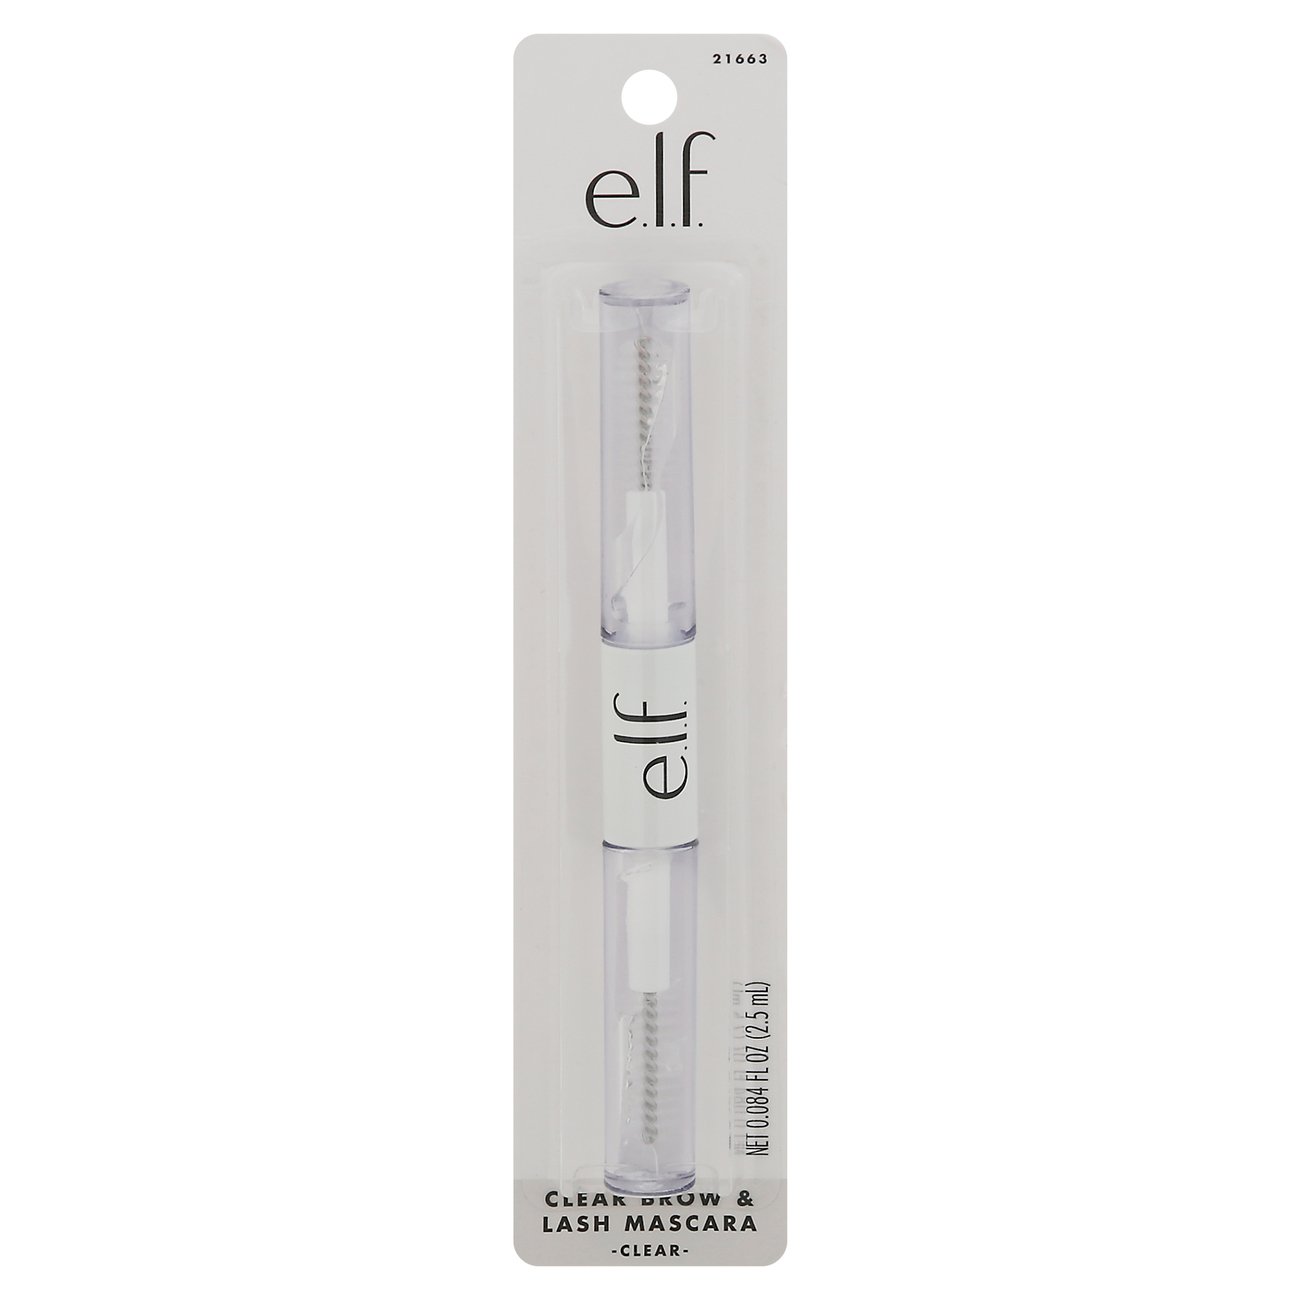 e.l.f. Clear Brow & Crystal - Shop Brow Pencils & Powder at H-E-B